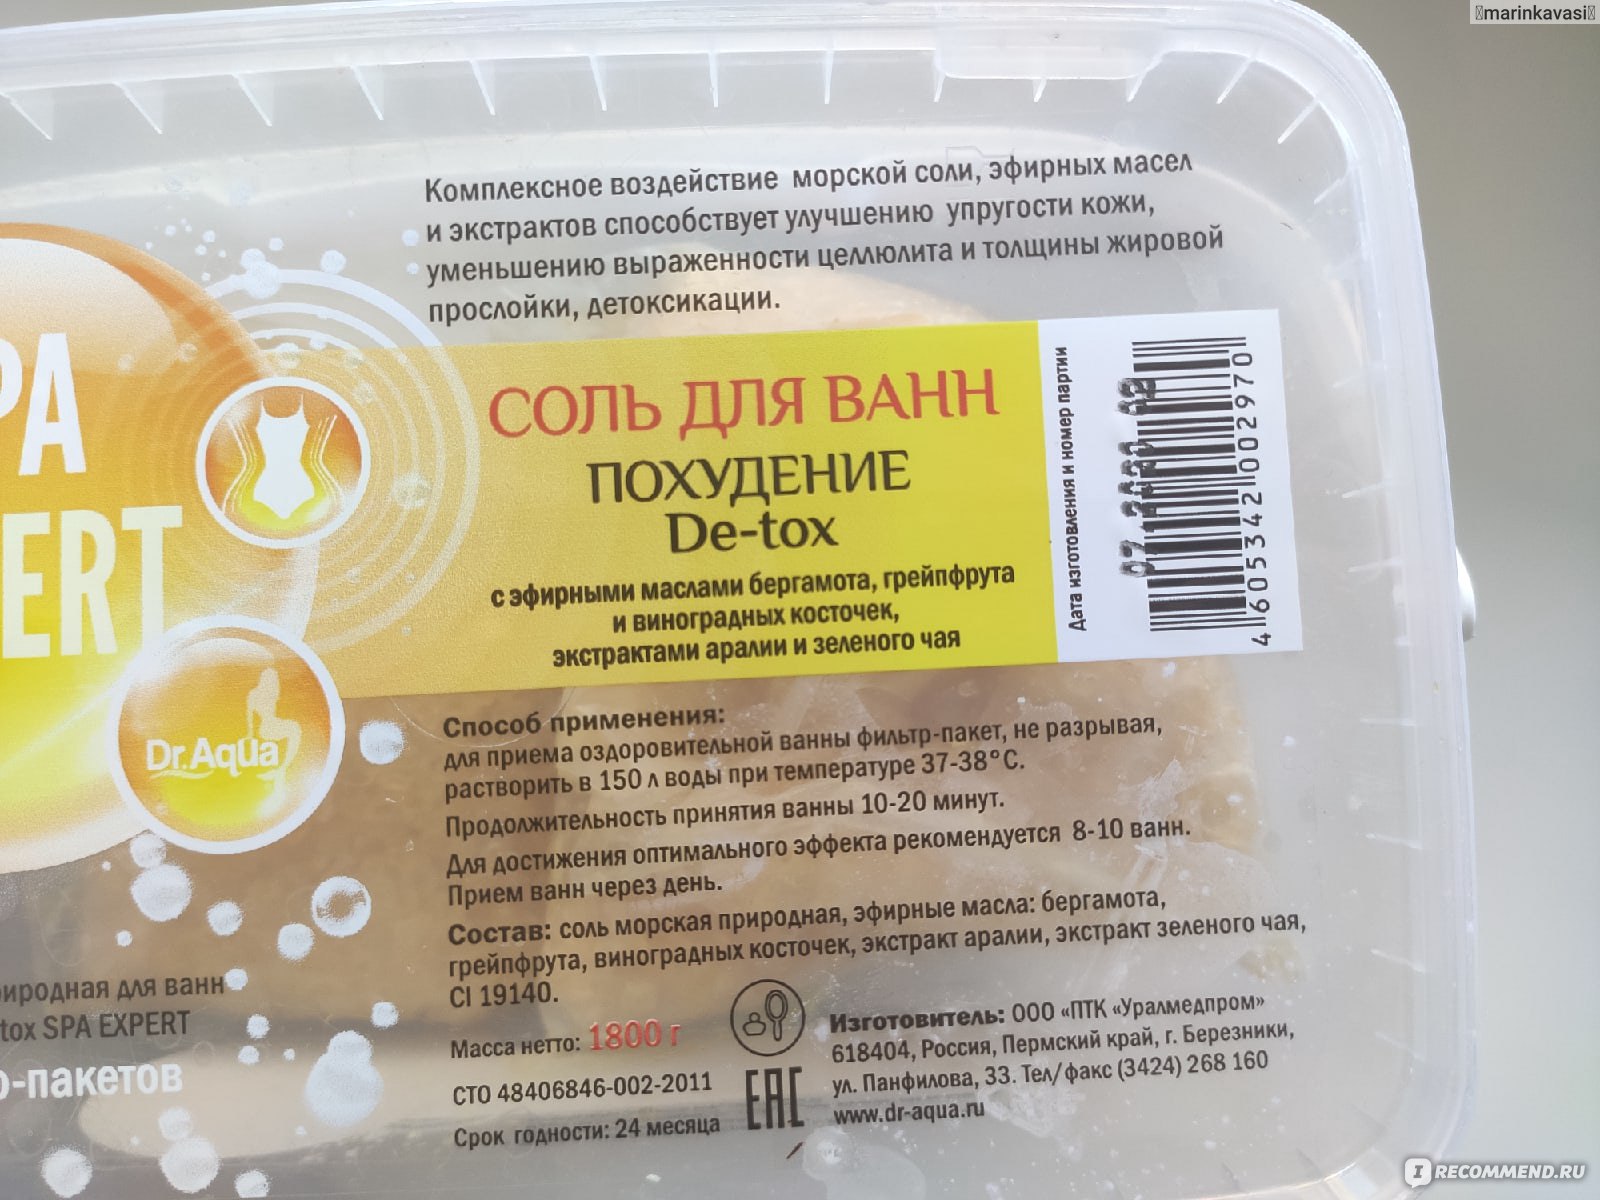 Соль для ванн Dr. Aqua Морская природная Похудение De-tox SPA EXPERT  фото